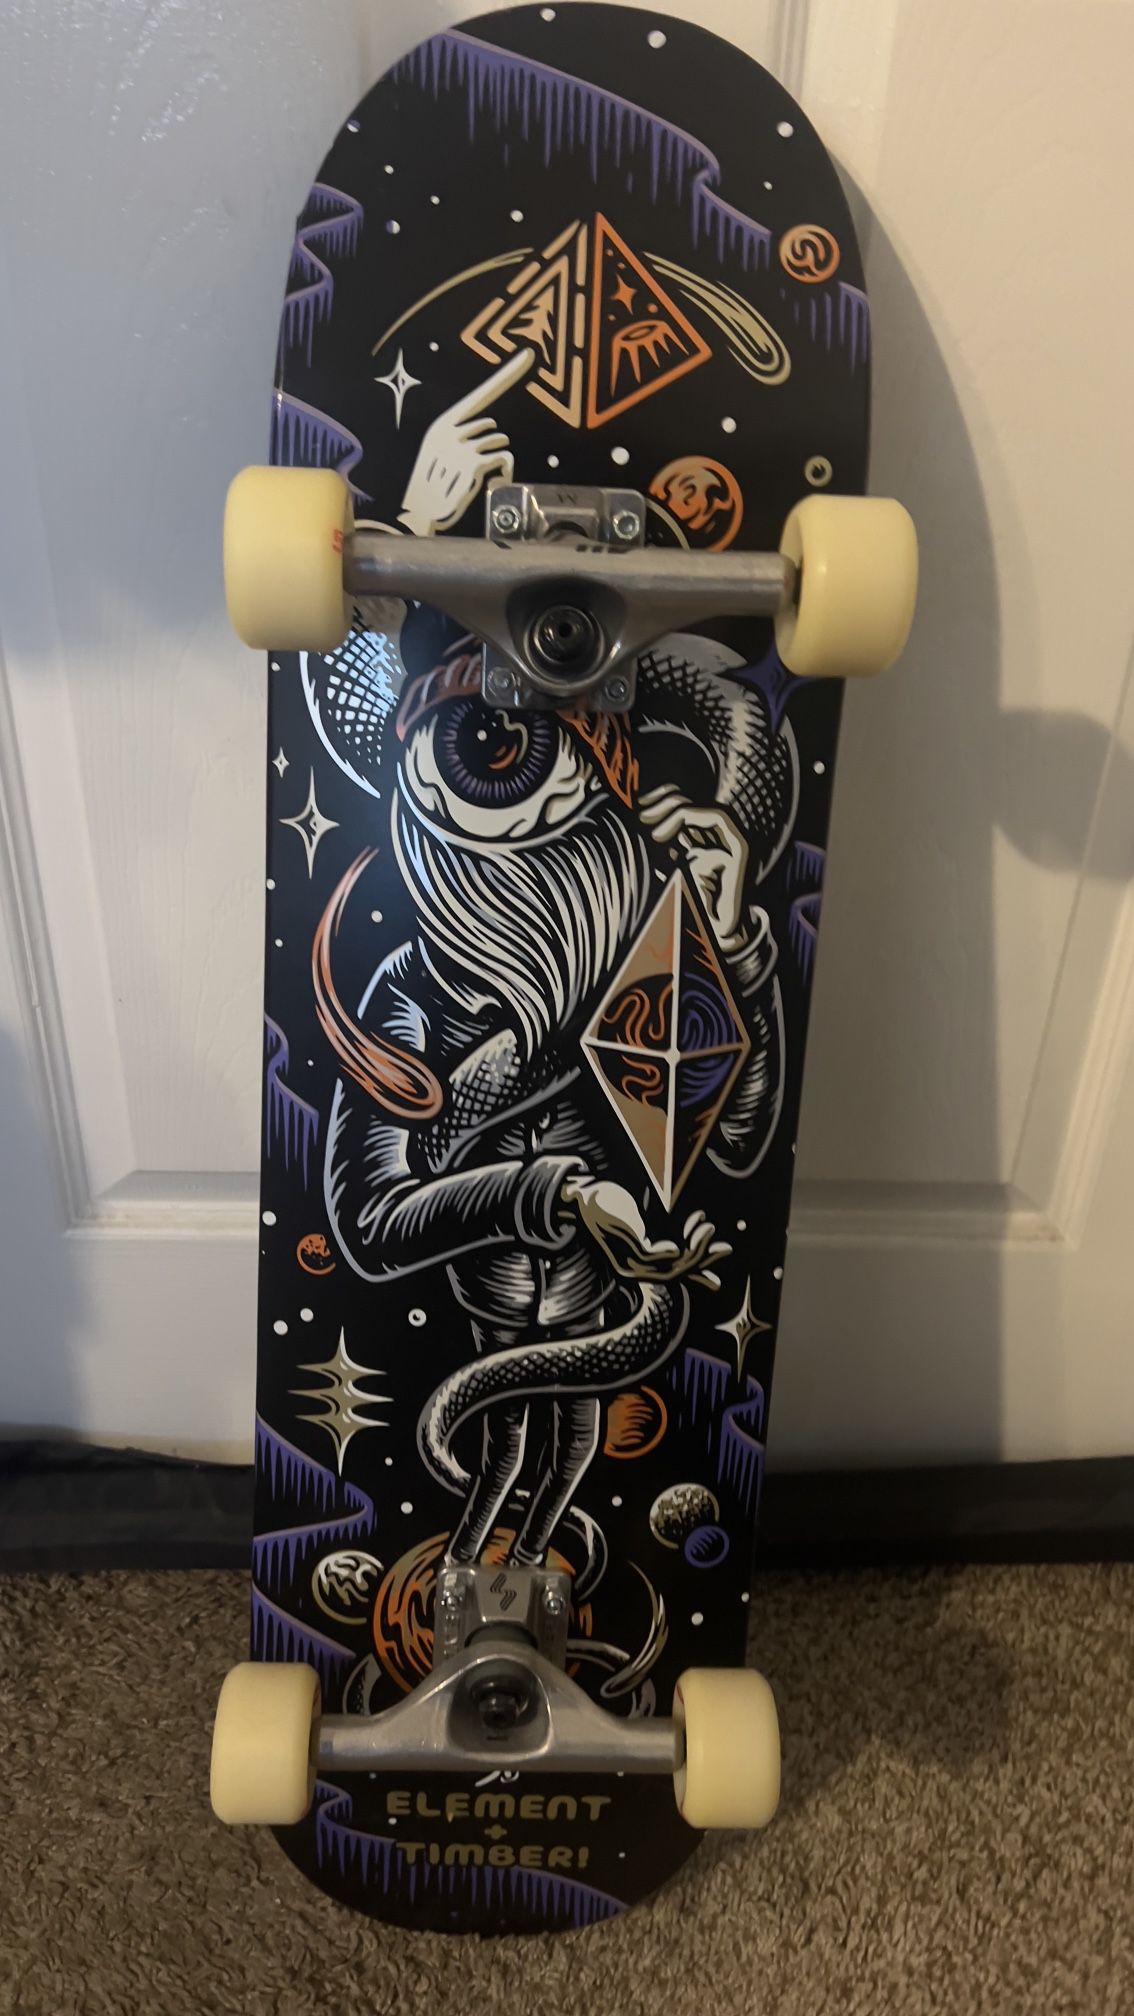 7.5 Never Used Skate Board.